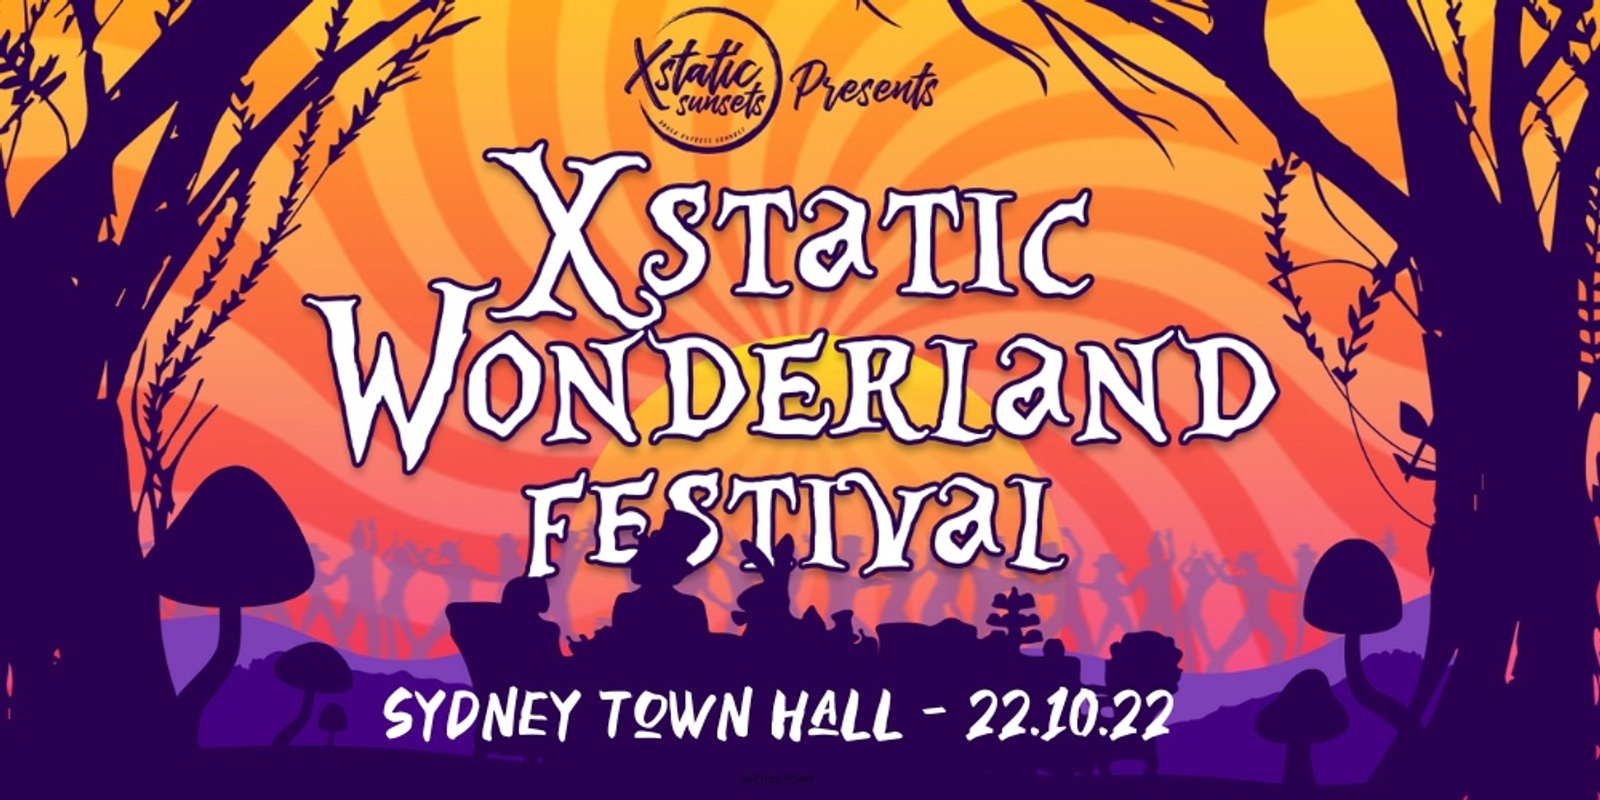 Banner image for Xstatic Wonderland Festival